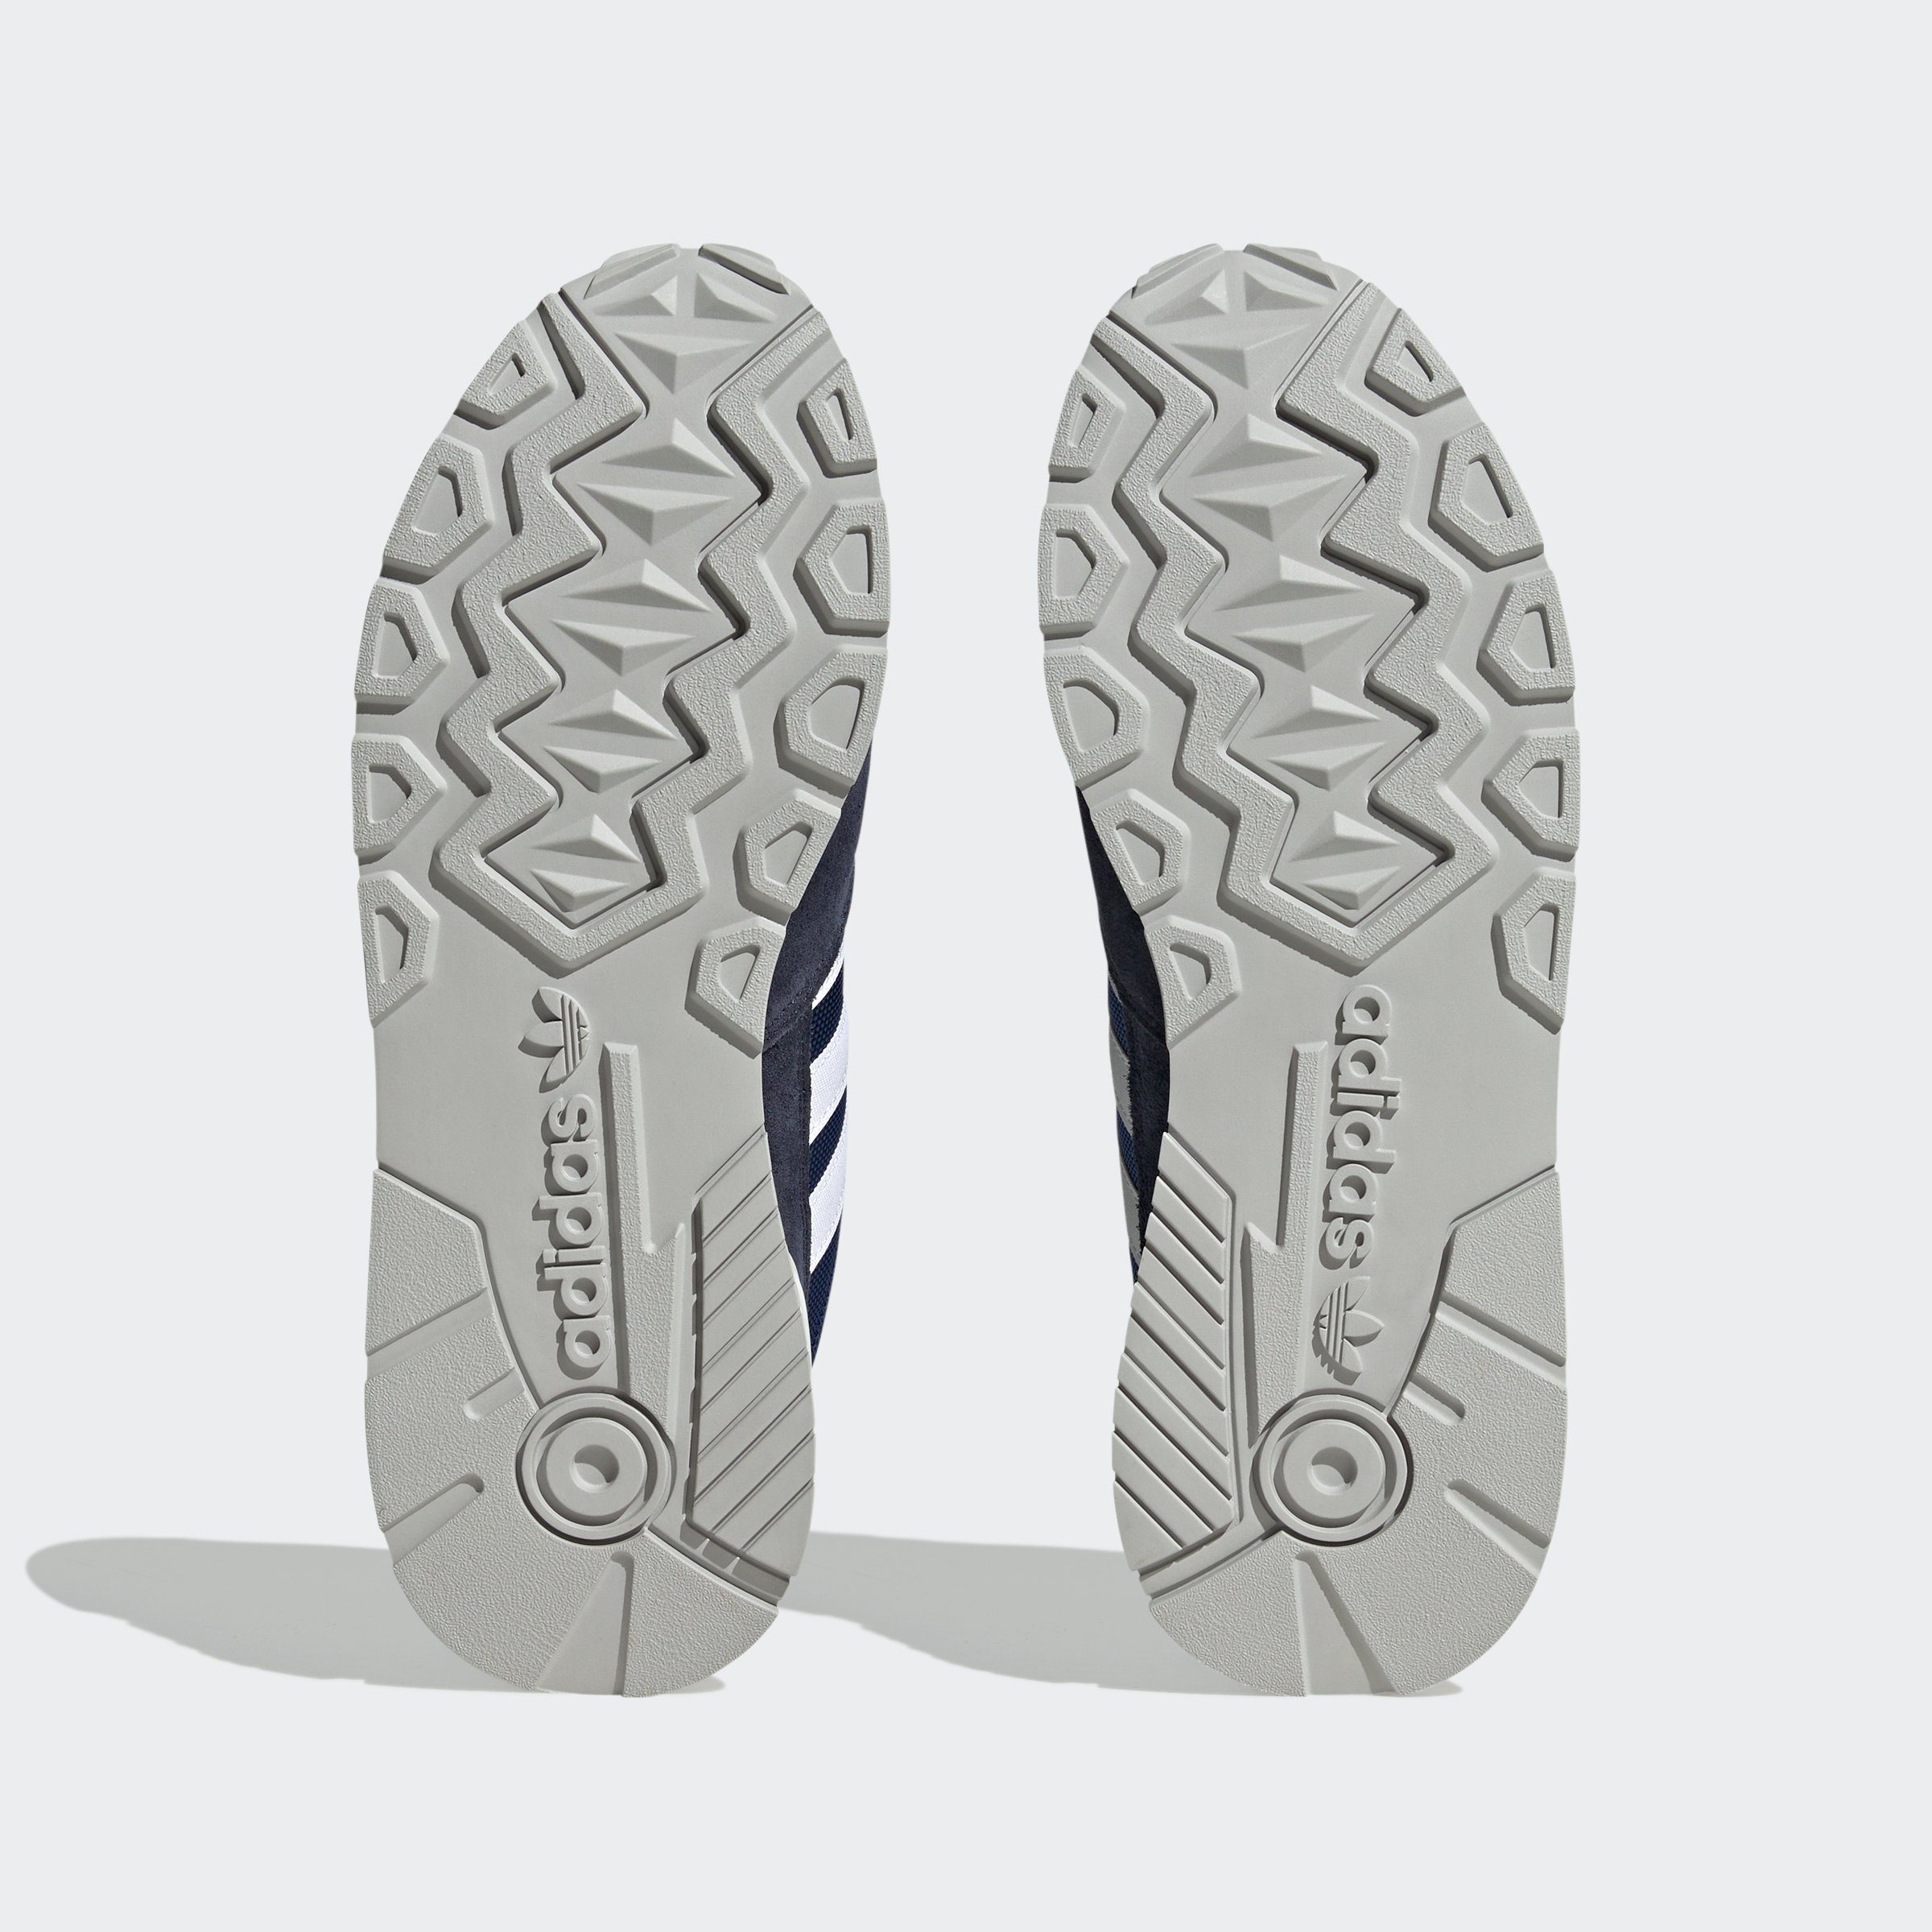 Sneaker blauweissblau TREZIOD adidas Originals 2